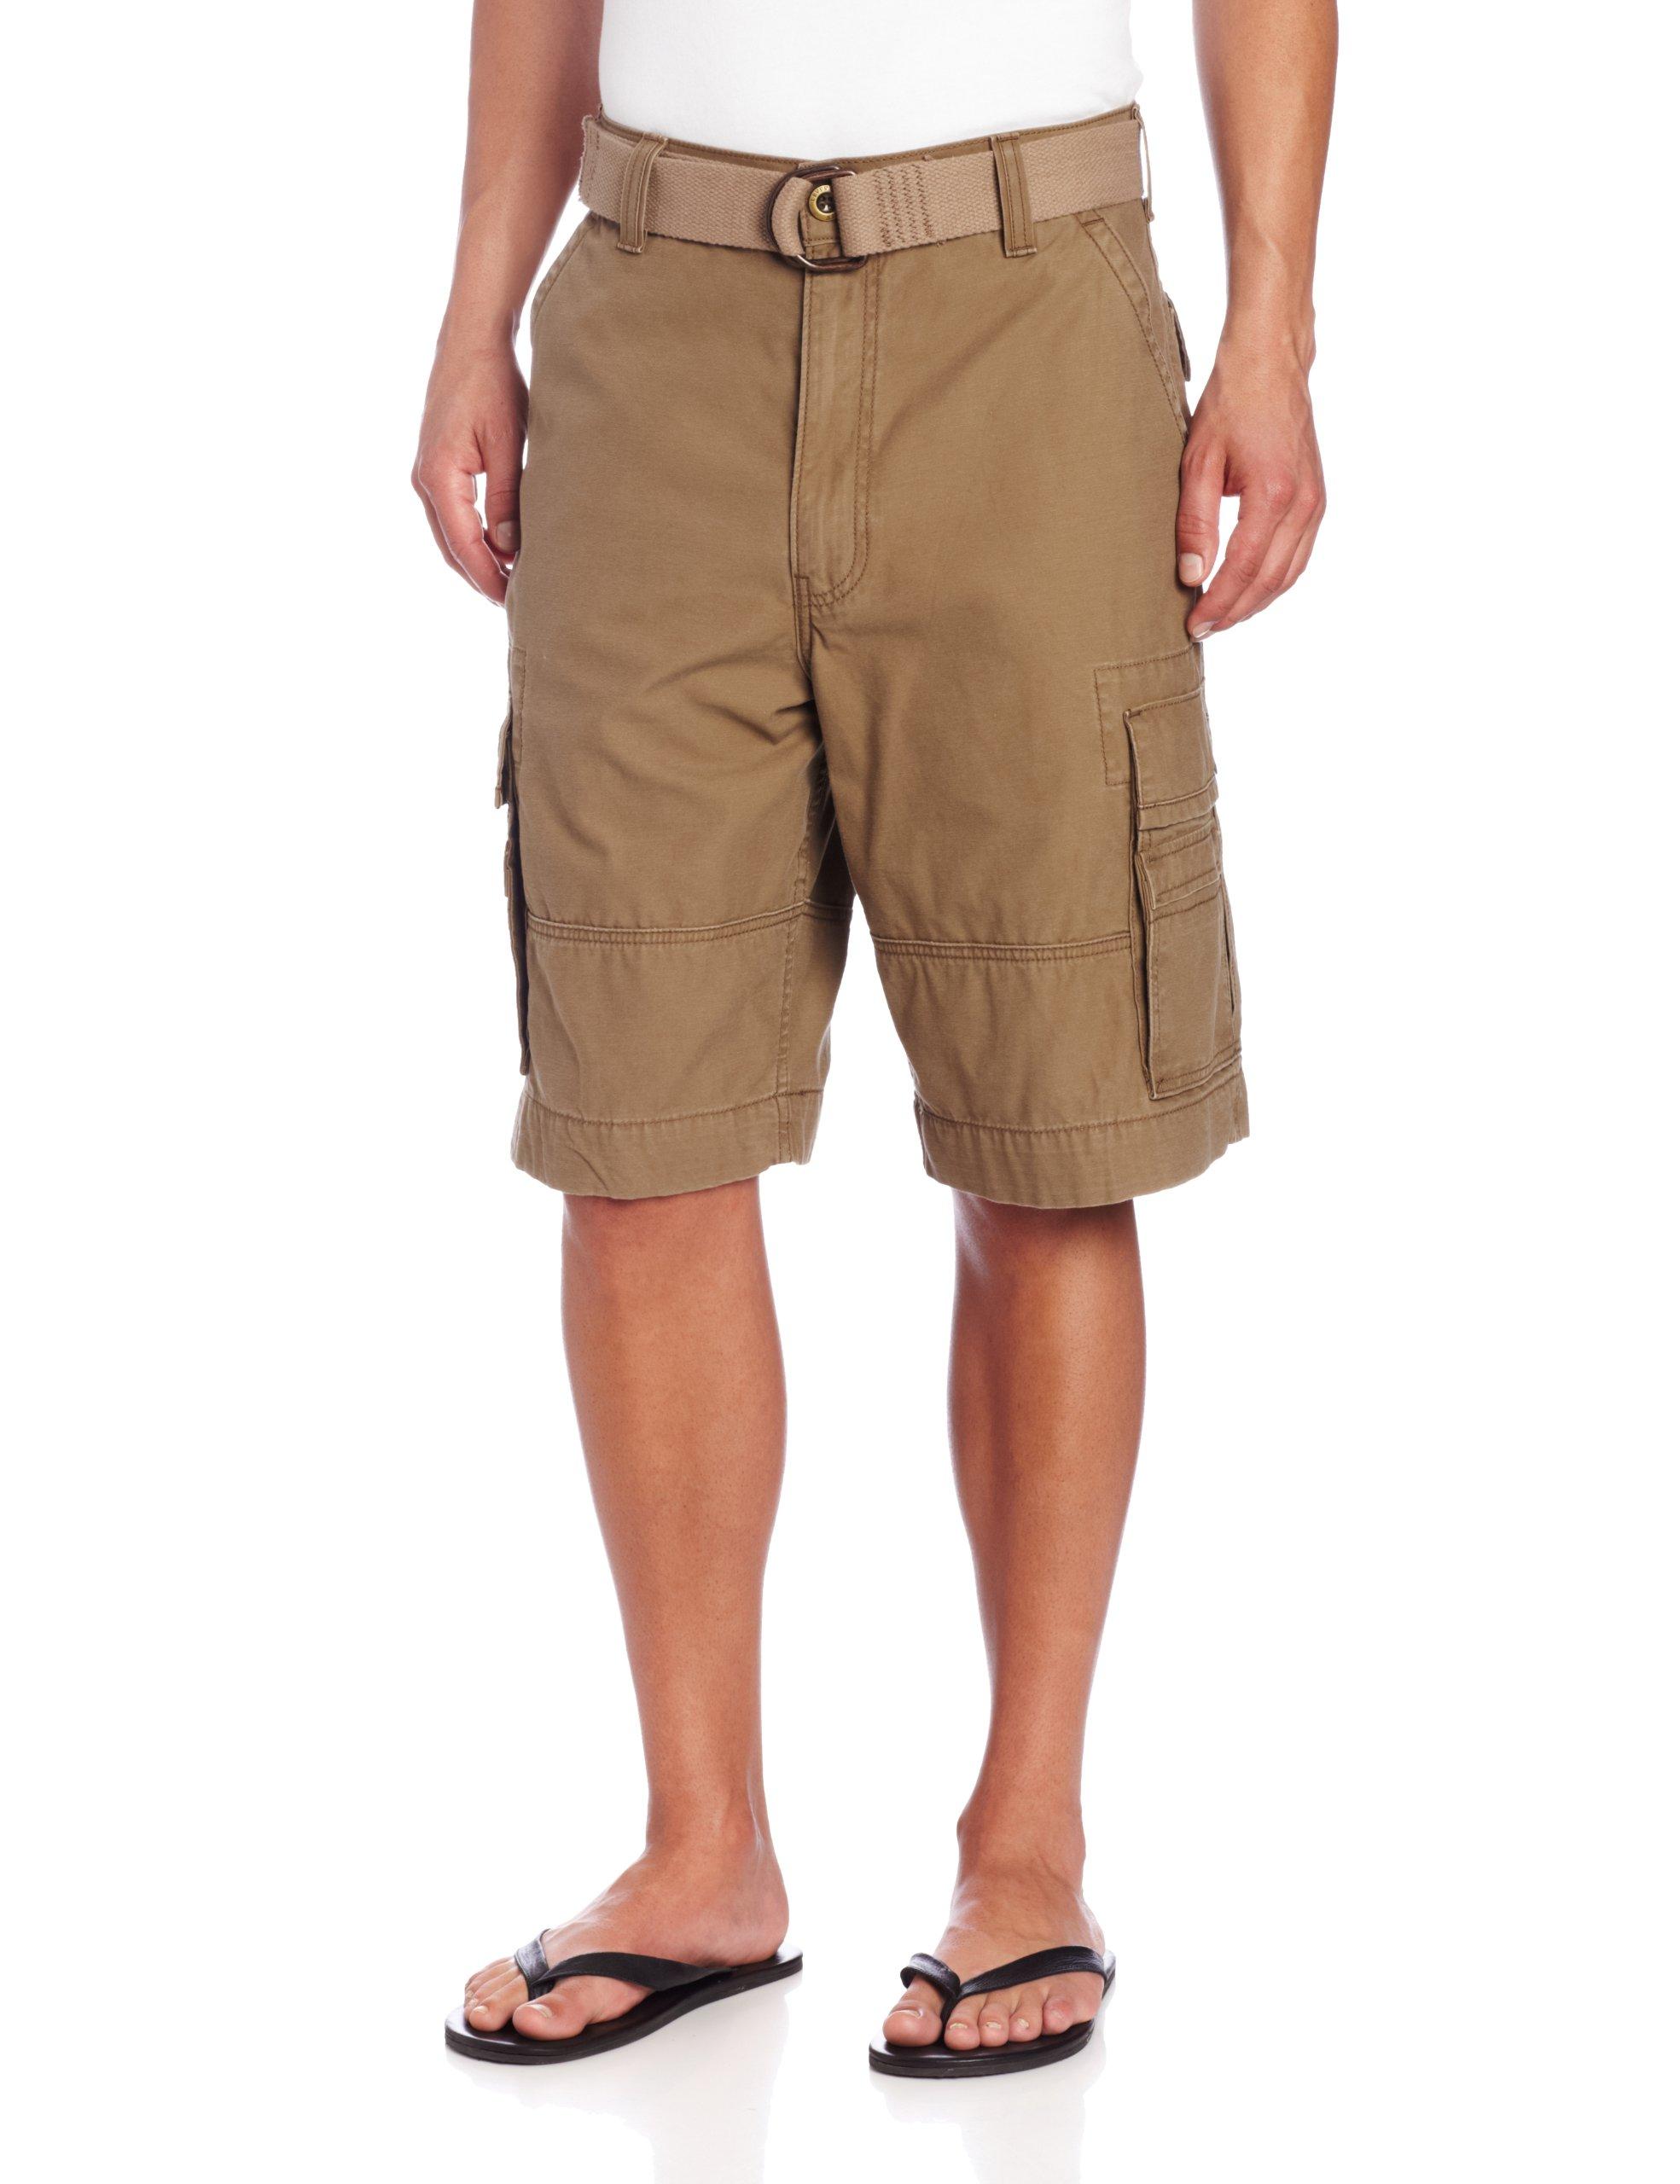 levi cargo shorts amazon